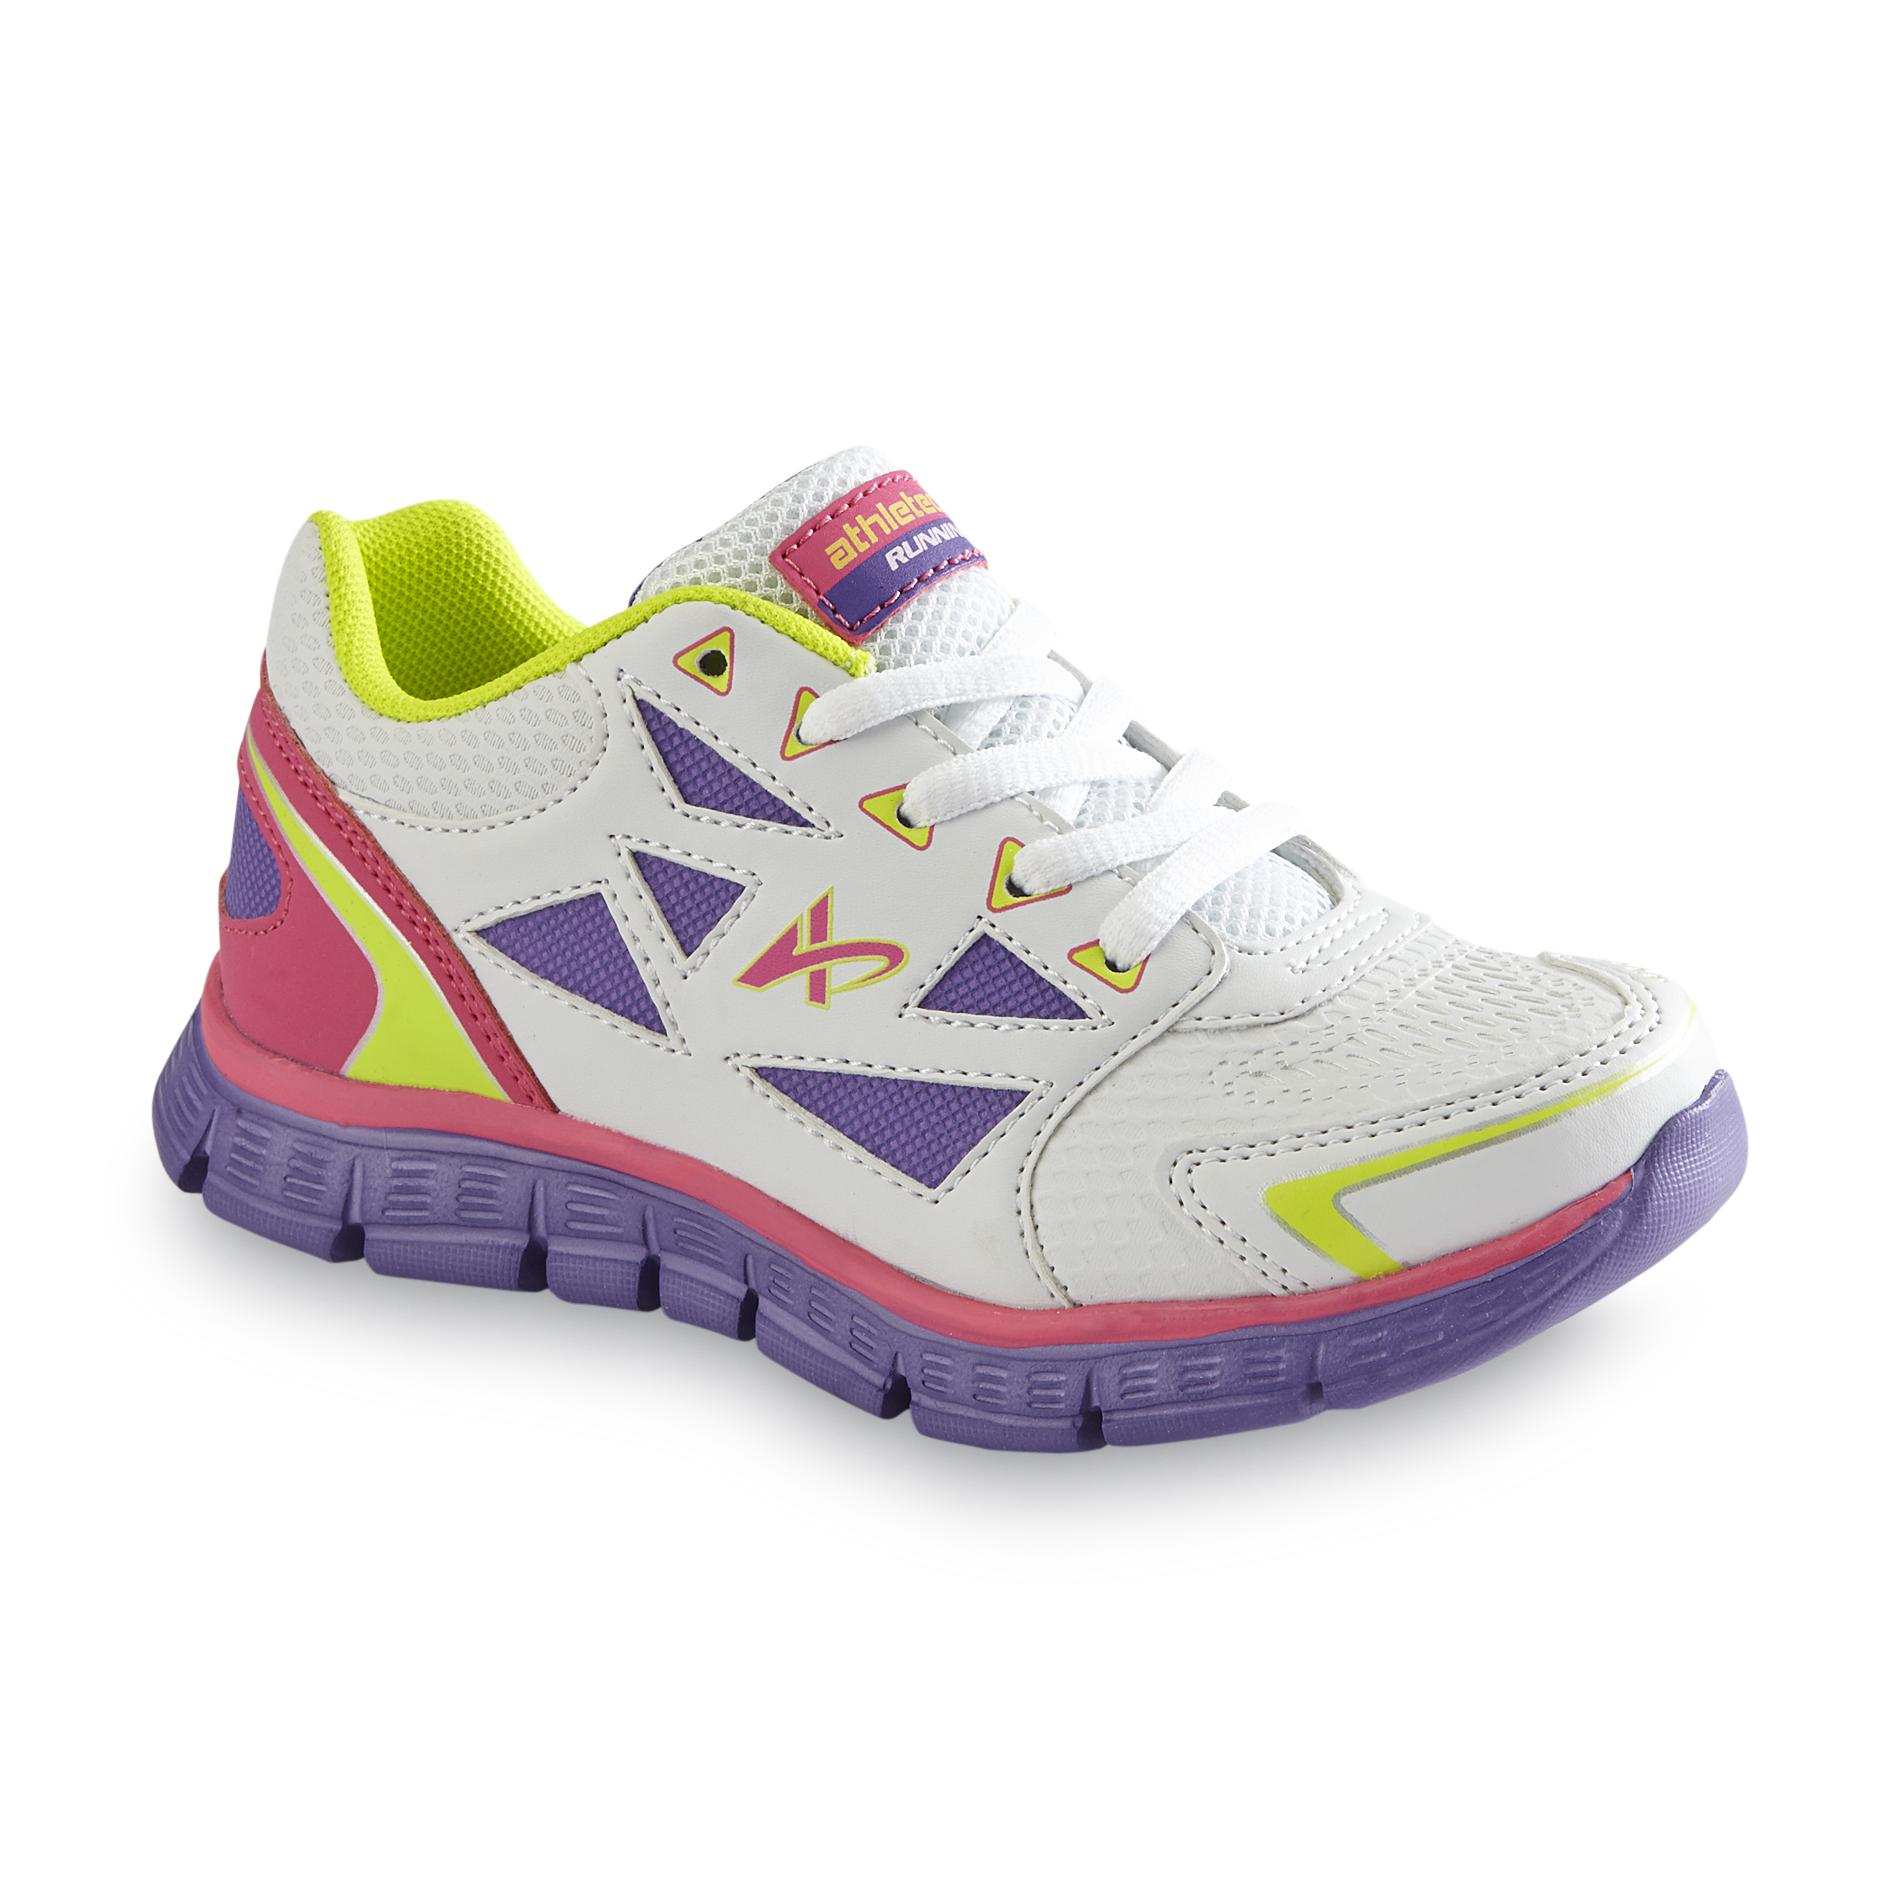 Girl's Dash Pink/Yellow Running Shoe